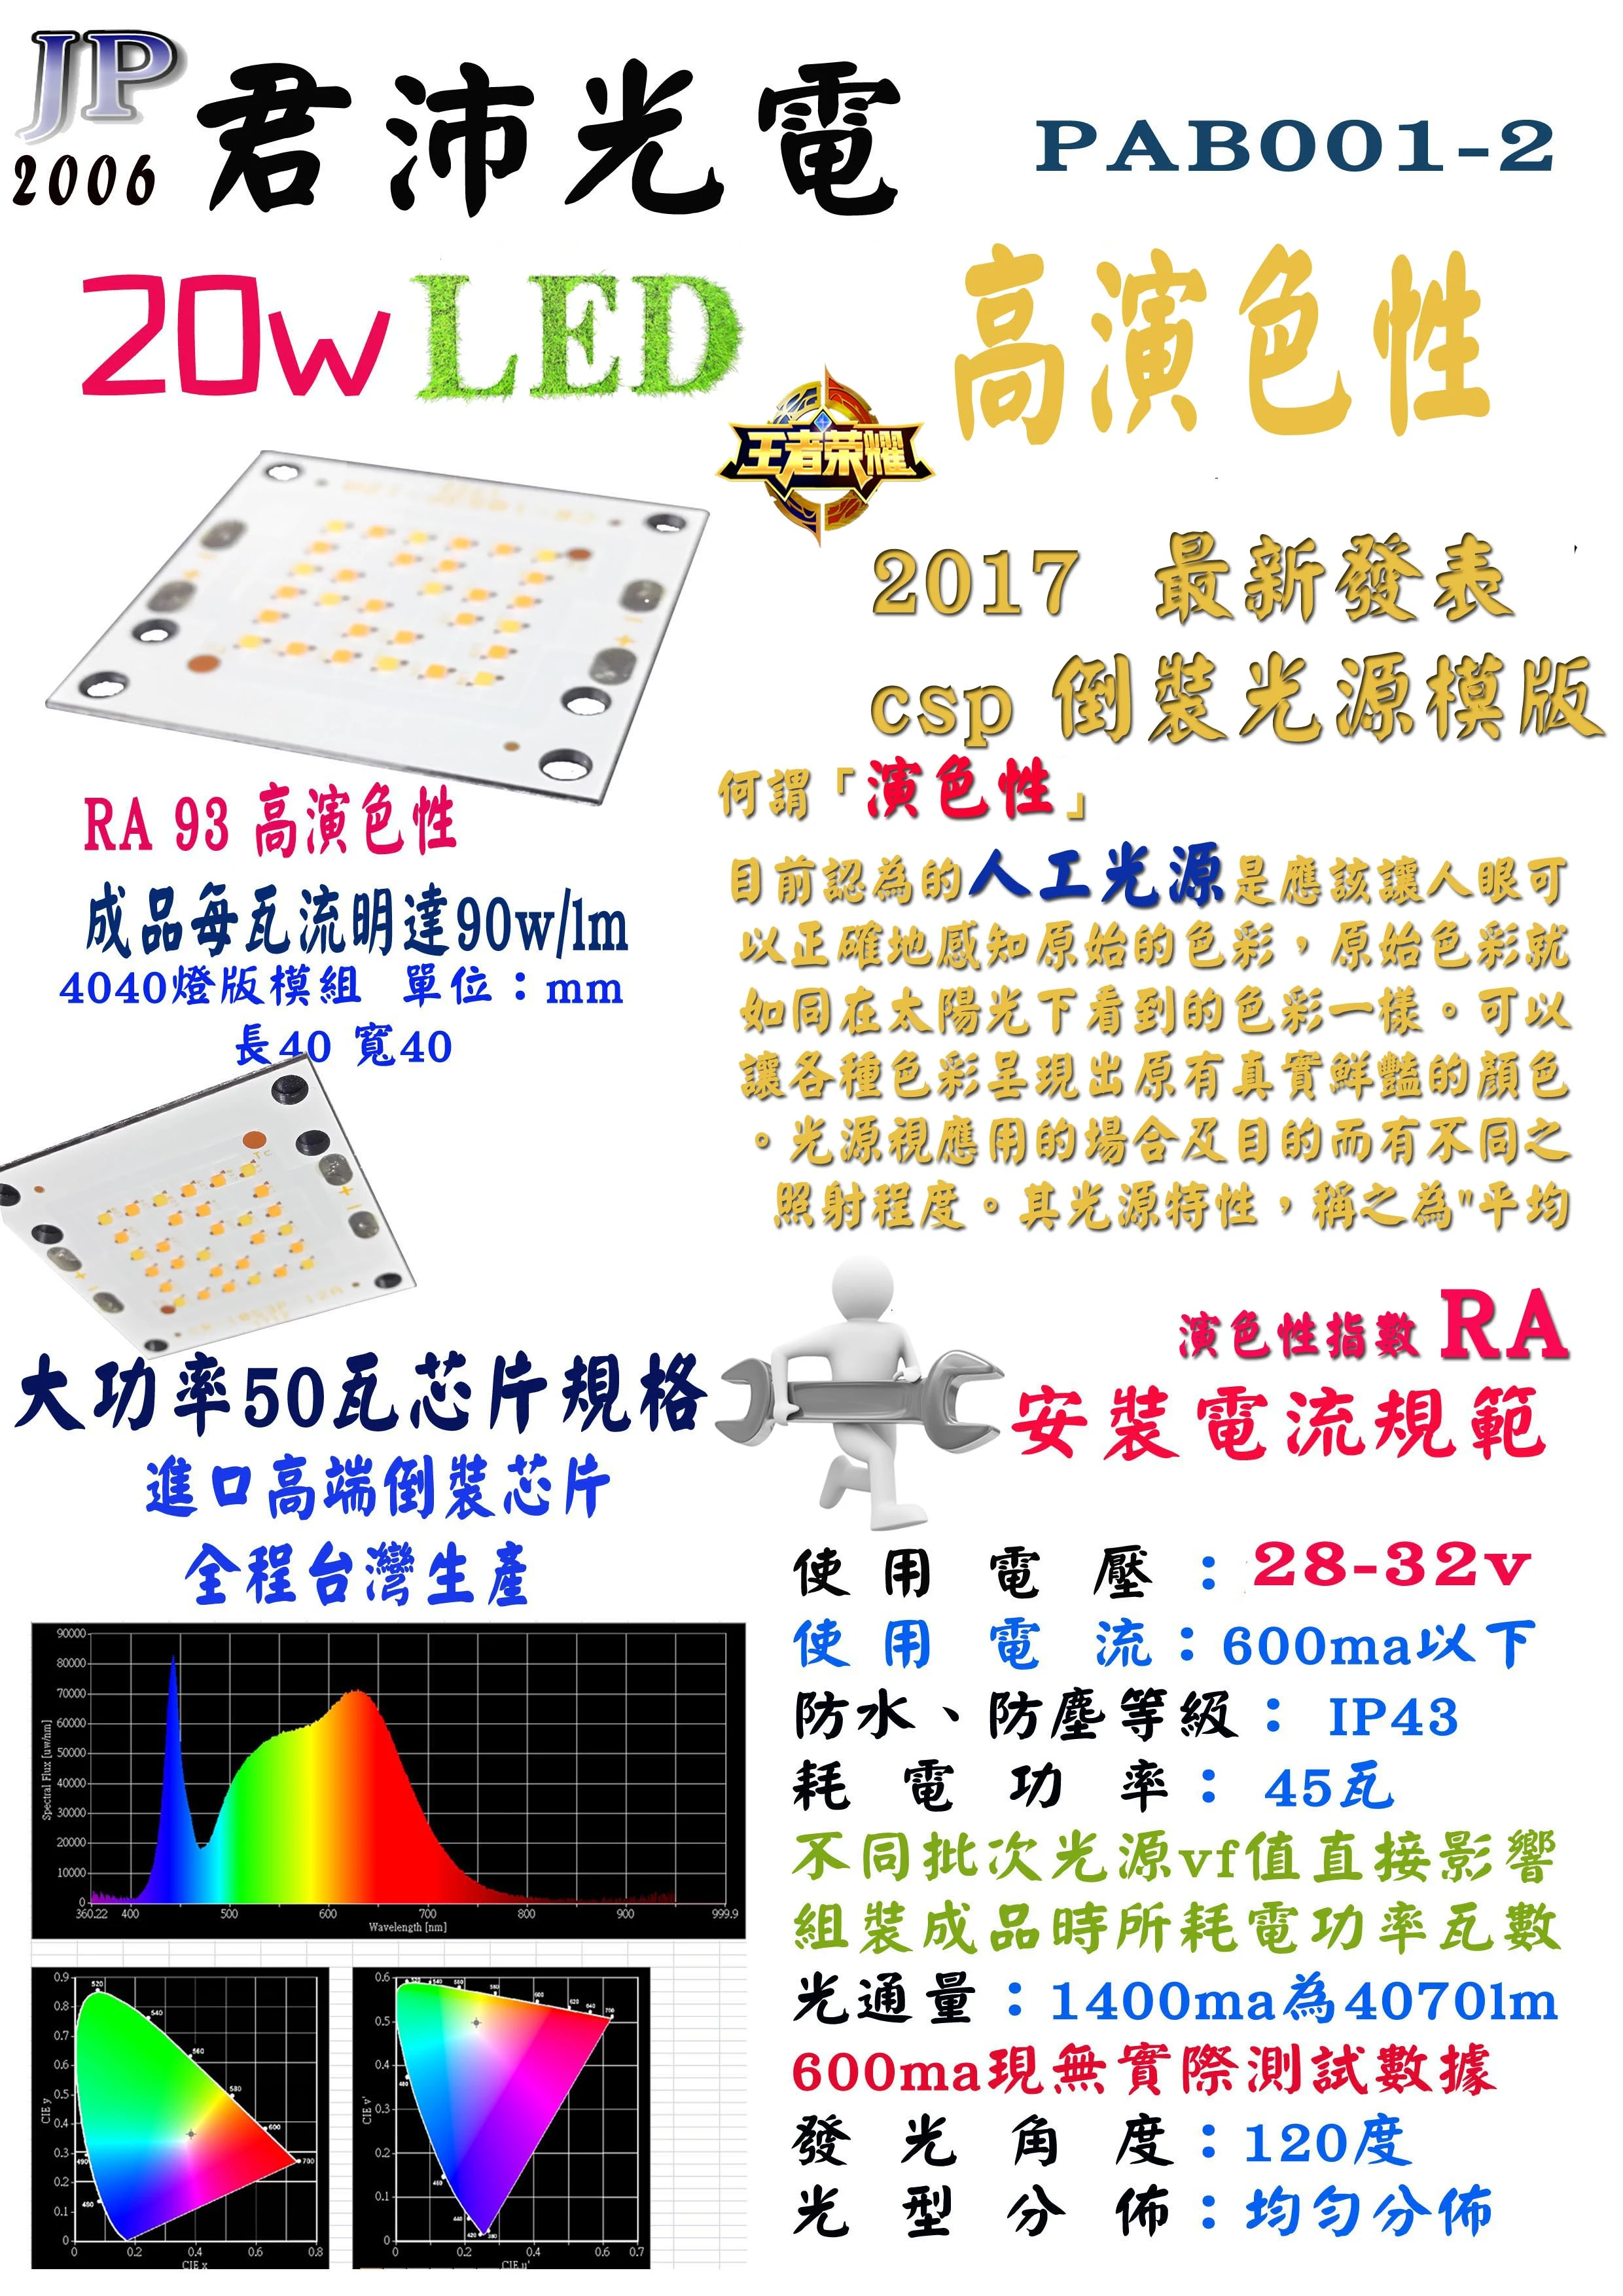 台灣生產 20w 高演色性 led光源模組 獨家開